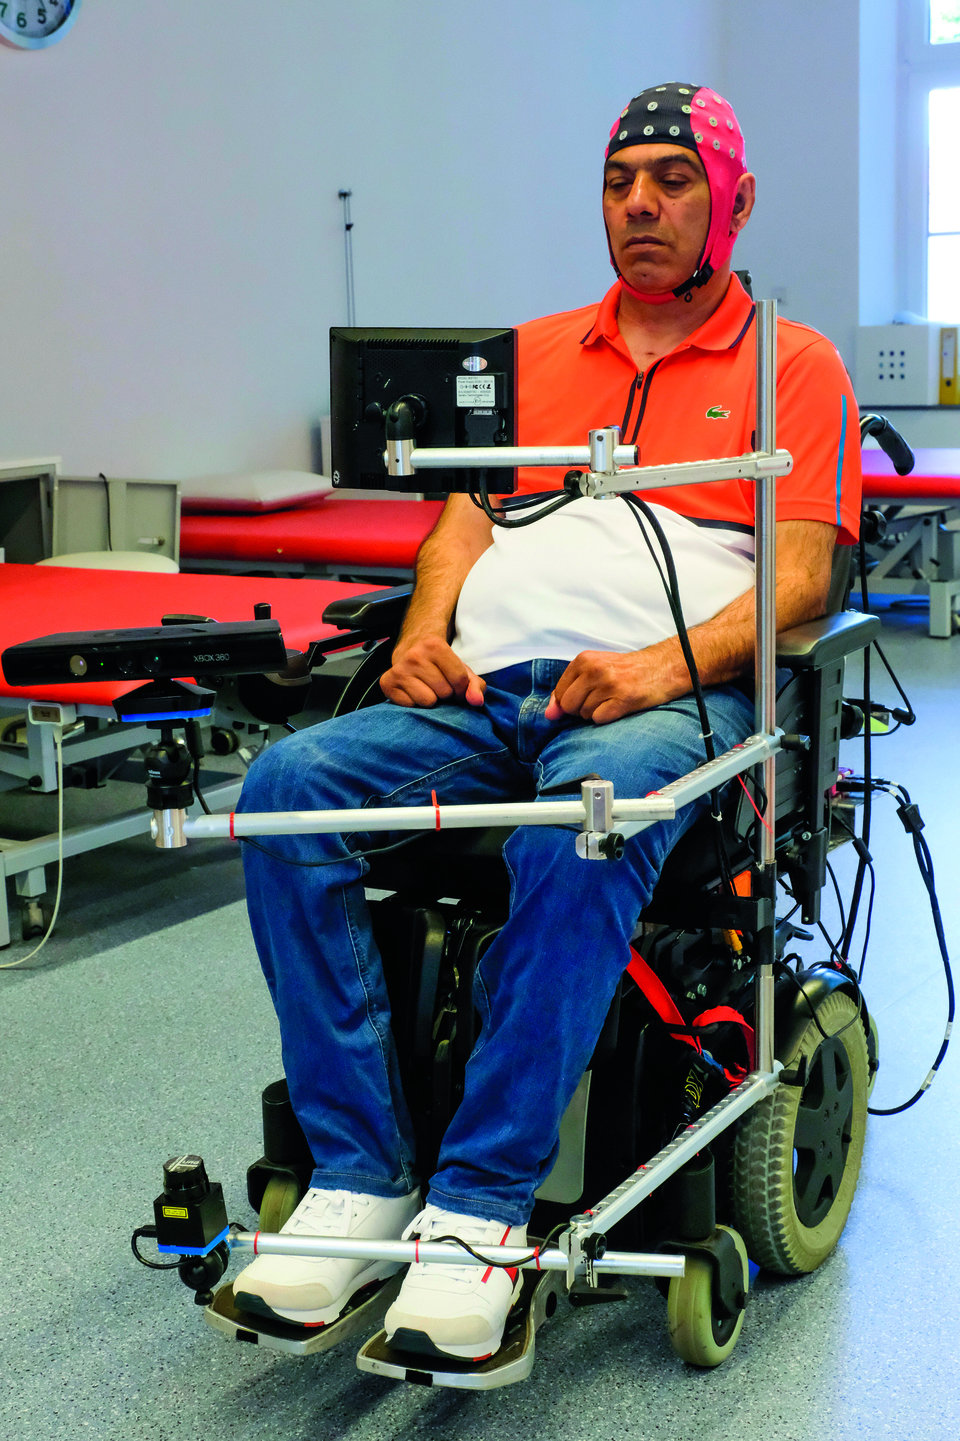 Dieser Patient steuert seinen Rollstuhl mithilfe seiner Gedanken. Die nötige Hardware ist bislang allerdings recht sperrig.